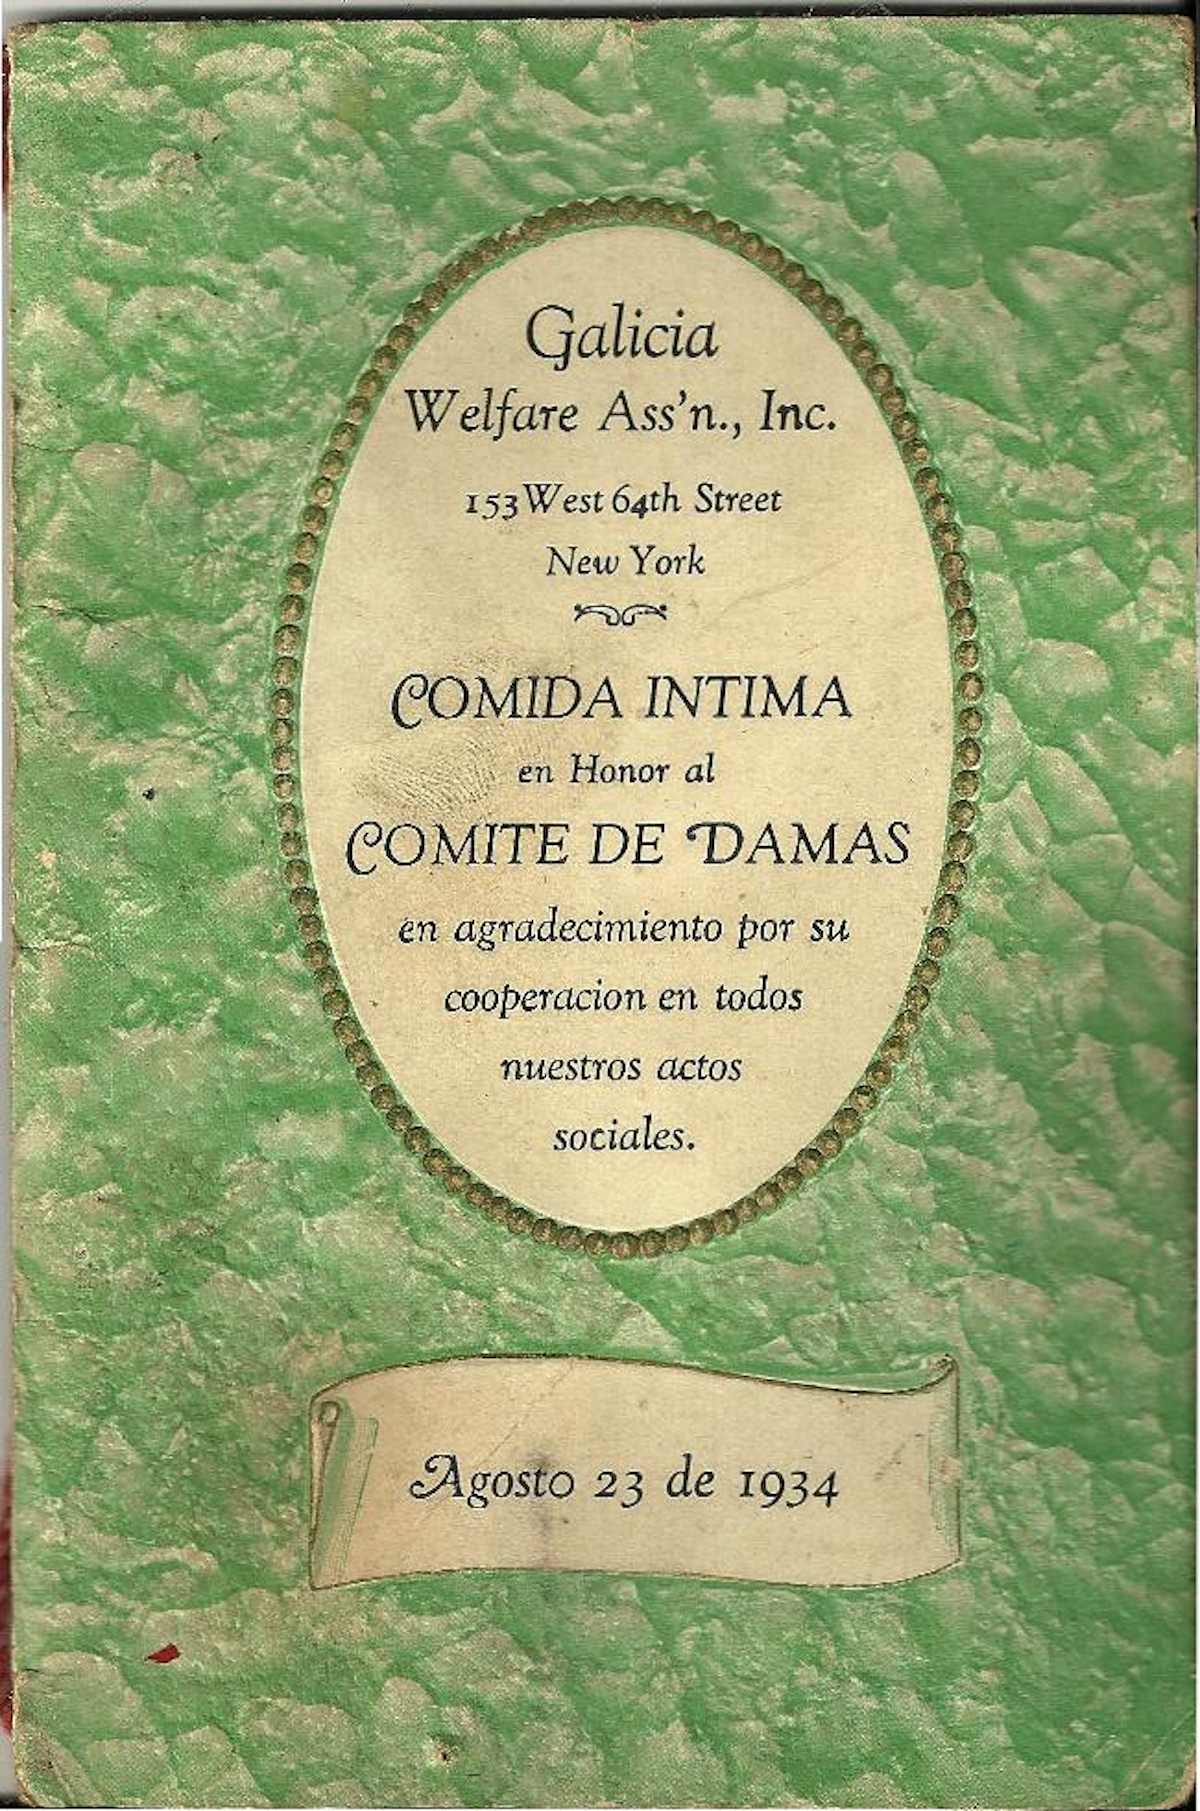 Convite a cea na honra do Comité de Damas da Union del Porvenir de Taborda e Piñeiro, Nova York (1934) (xentileza de Natalia Jorge)